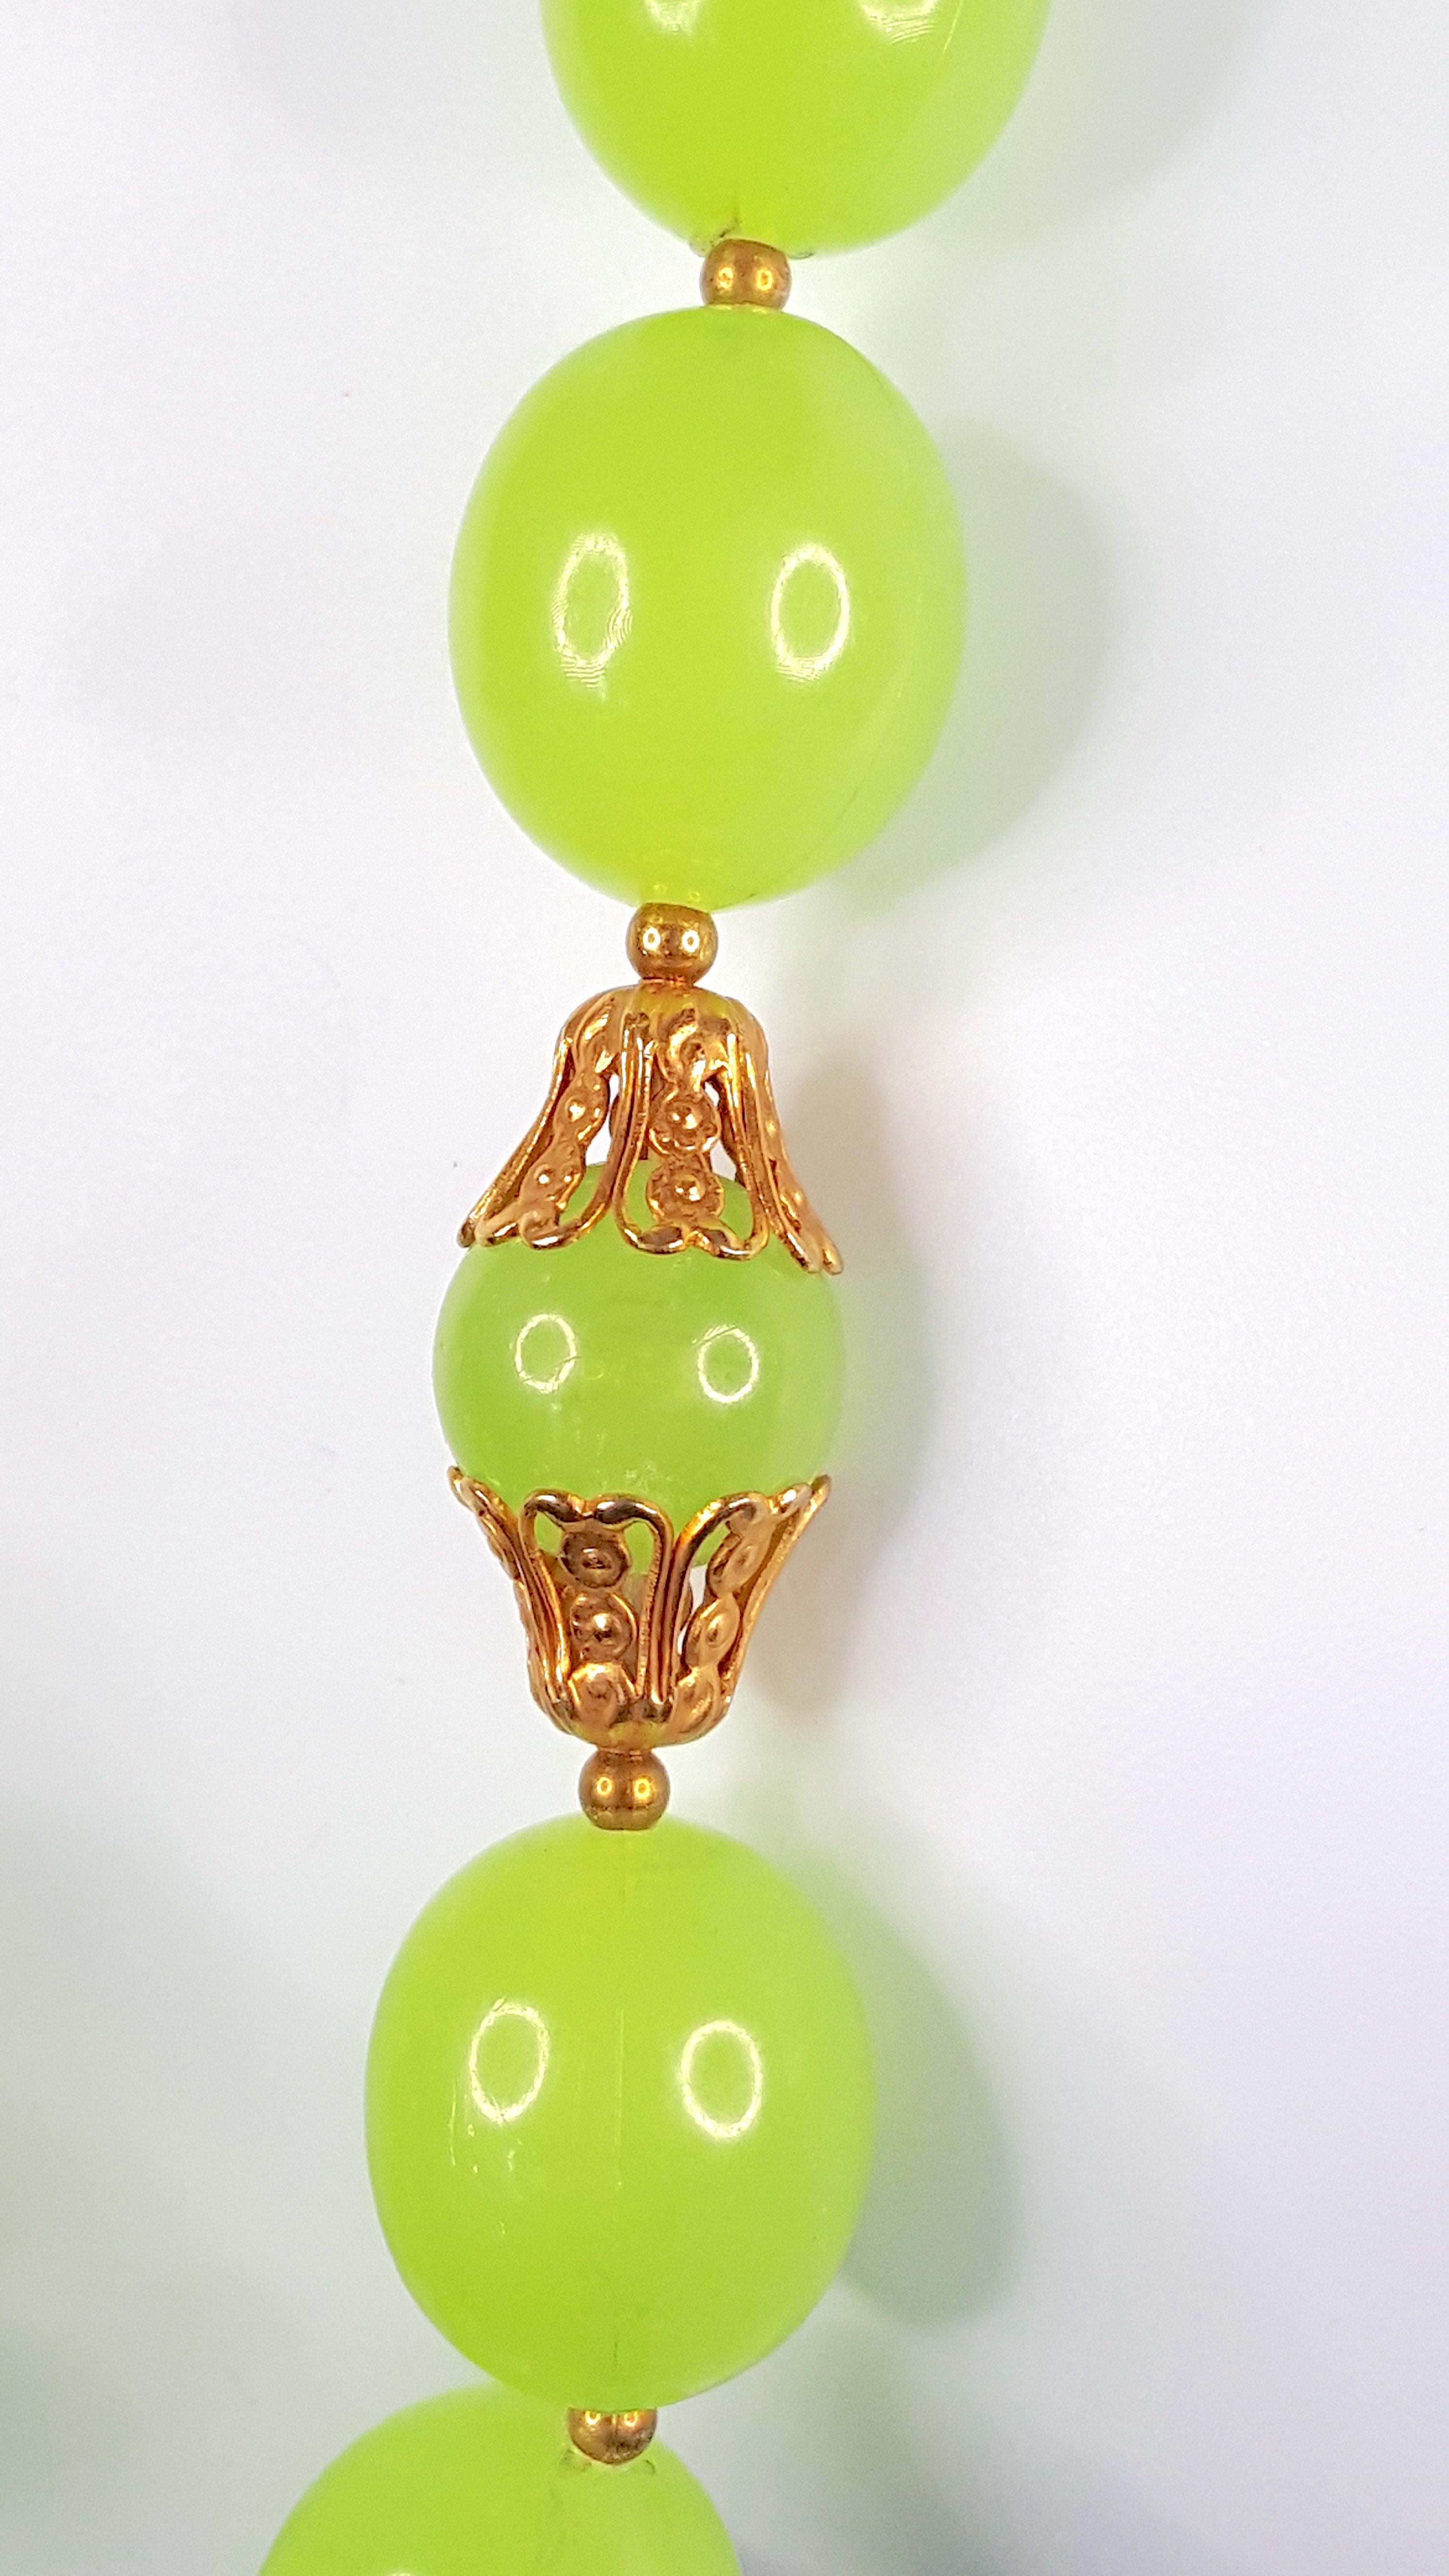 Ce collier antique en verre pressé à la main présente de grosses perles semi-translucides de couleur vert raisin, couronnées d'un filigrane en laiton doré. D'après la combinaison des coutures de perles, du fermoir à anneau à ressort et des pièces